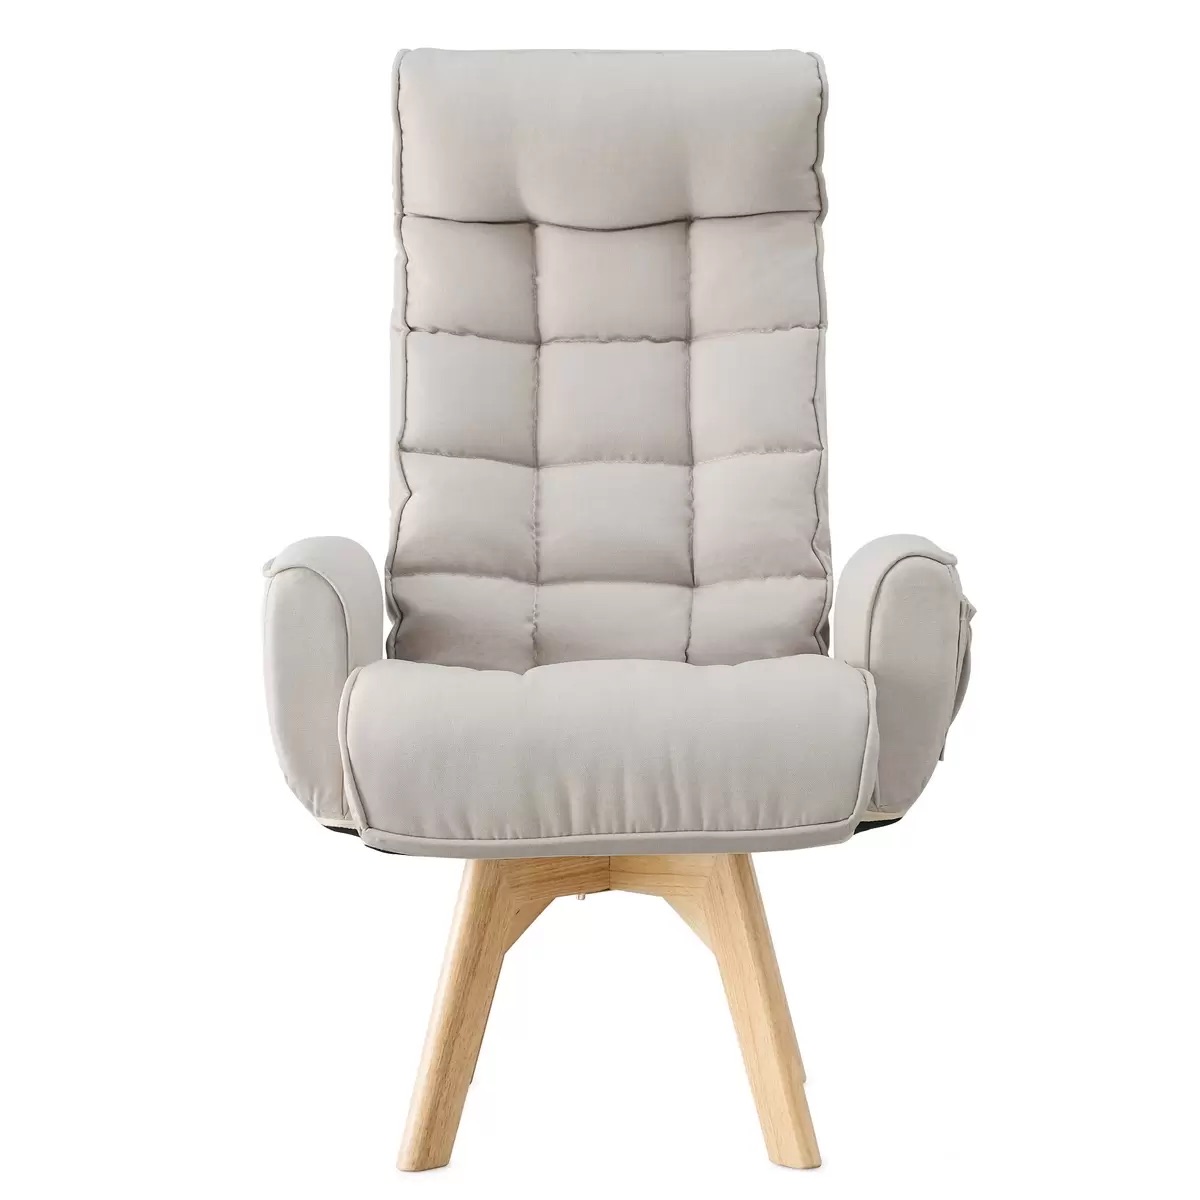 アイリスオーヤマ 回転ファブリックチェア ハイバック アイボリー IRIS OHYAMA Fabric Swivel Chair High-Back Ivory